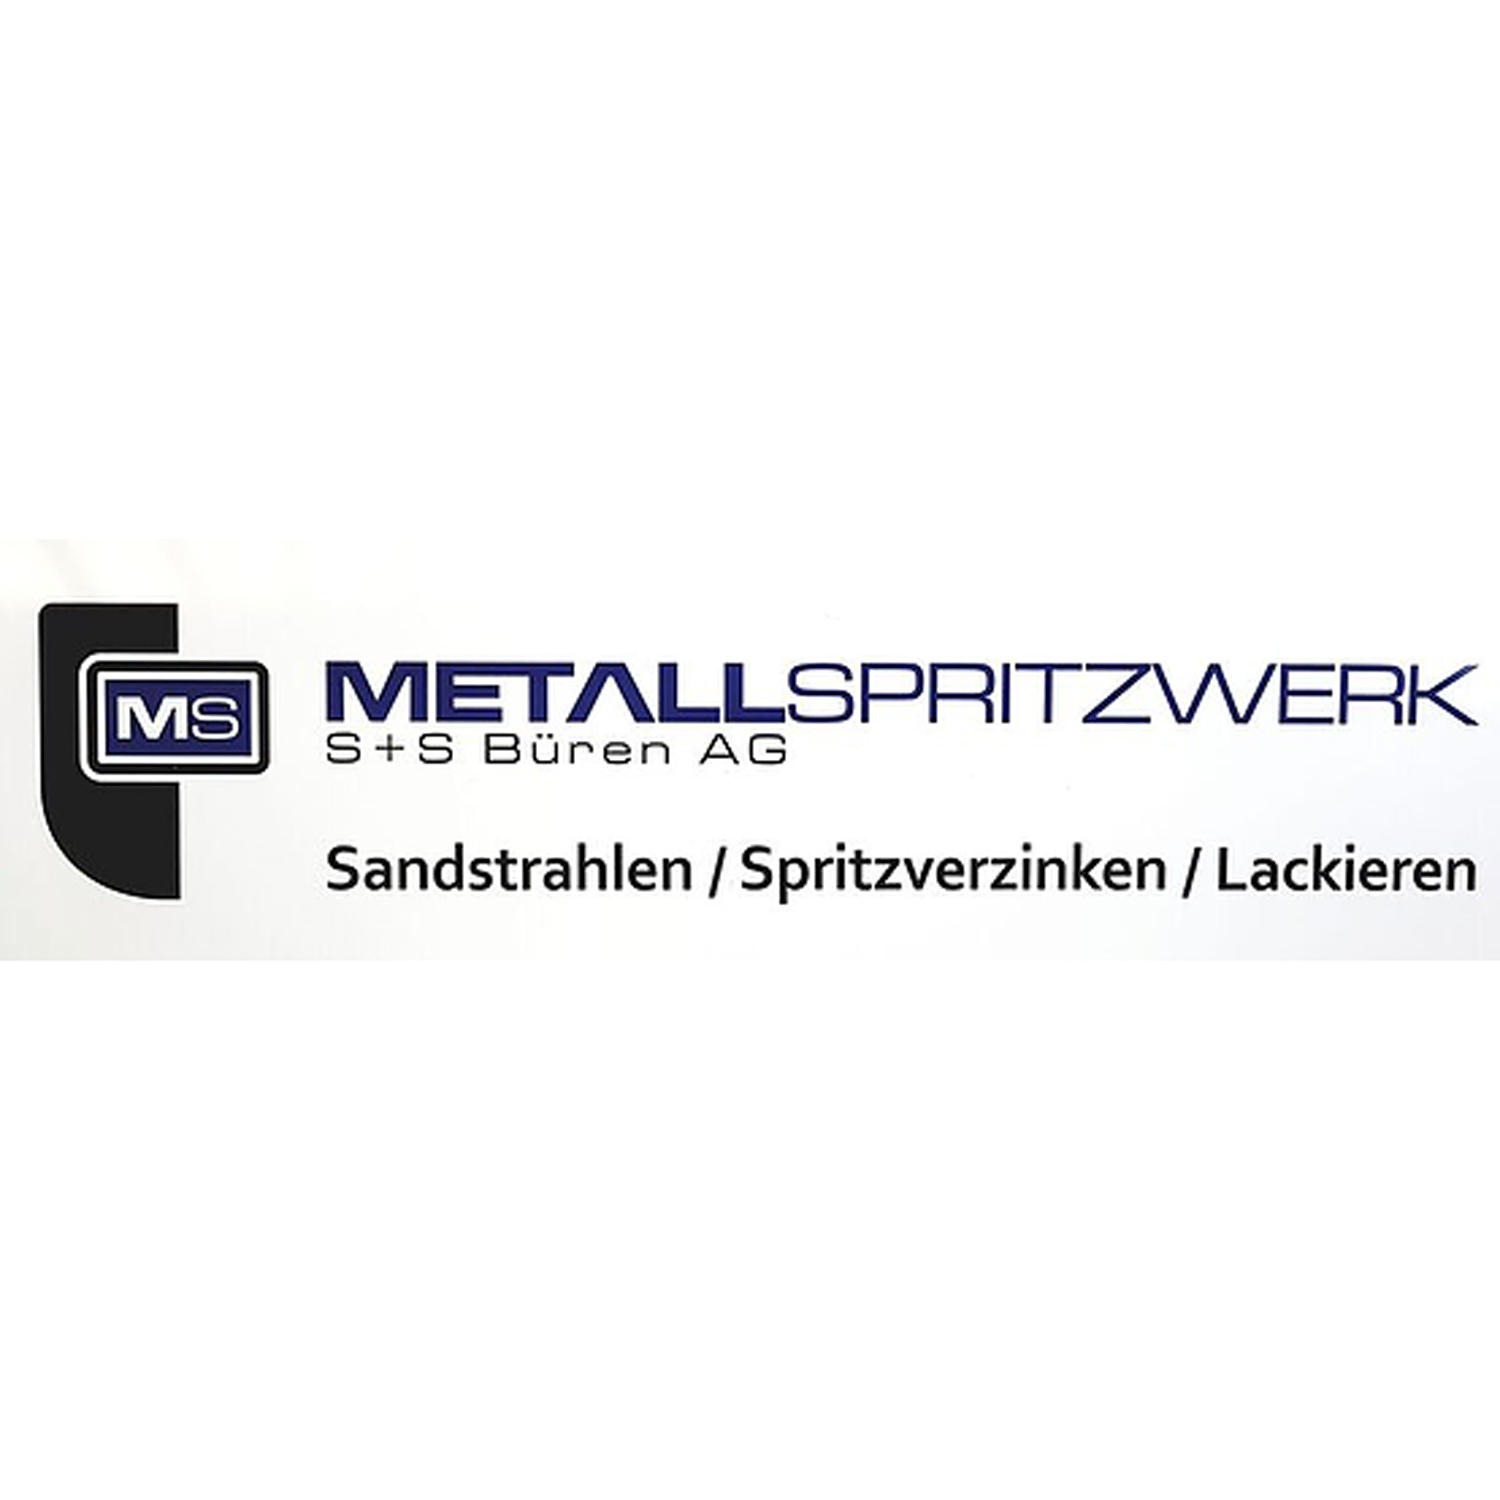 Metallspritzwerk S+S Büren AG